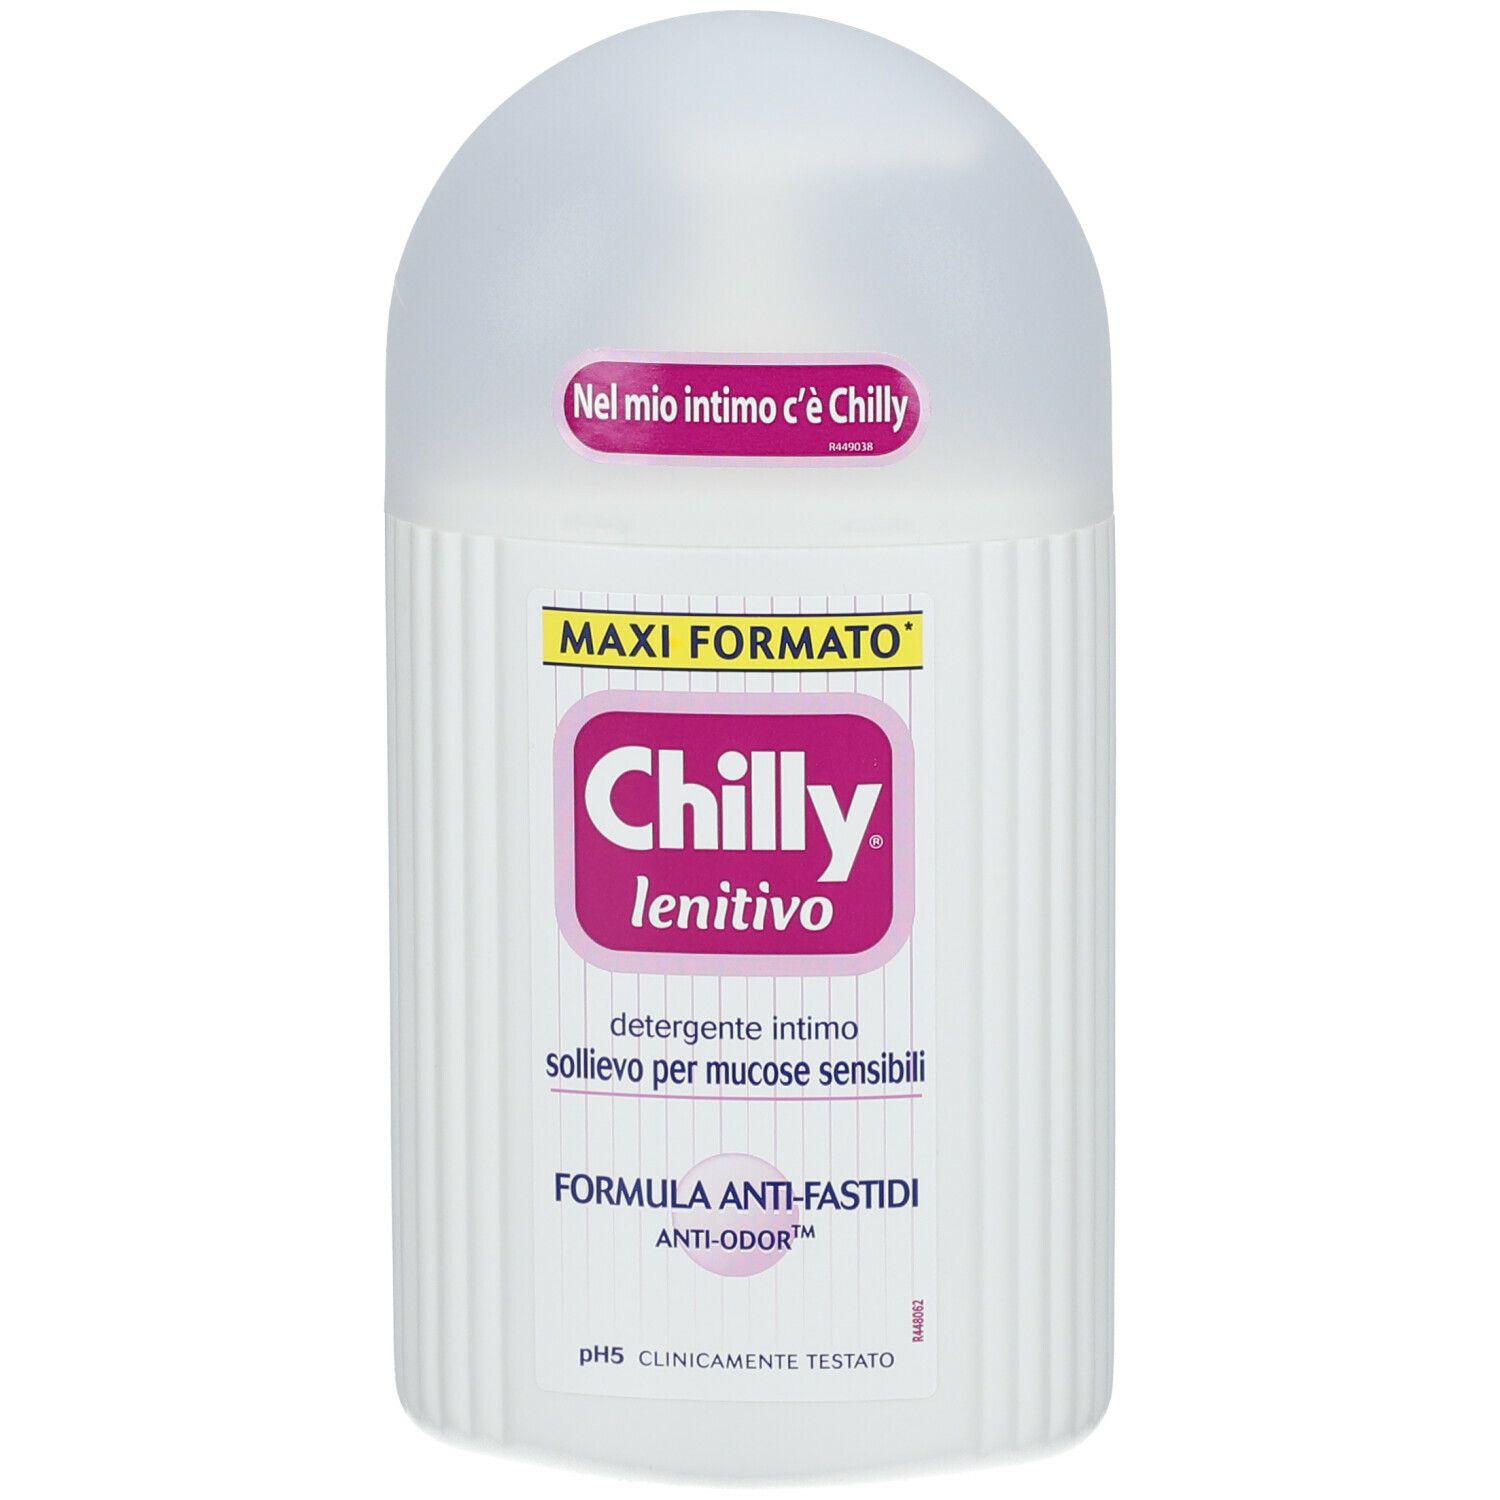 Chilly® Lenitivo Formula Anti-Fastidi